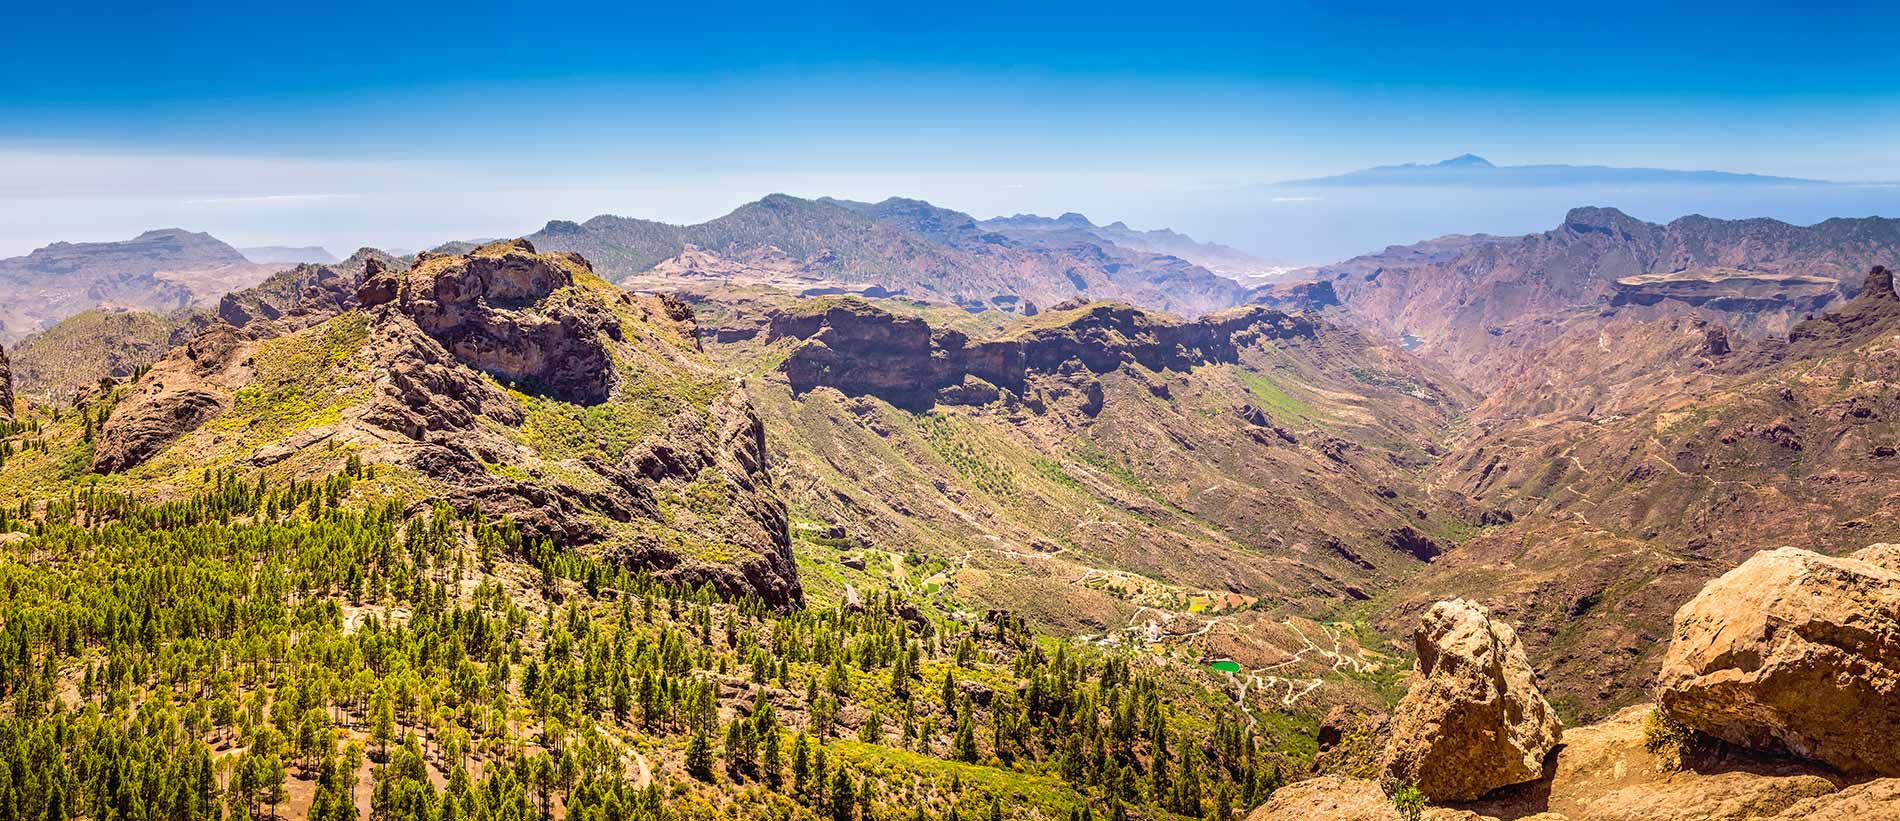 Kanarische Inseln Wandern - Gran Canaria con Roque Nublo y Tenerife